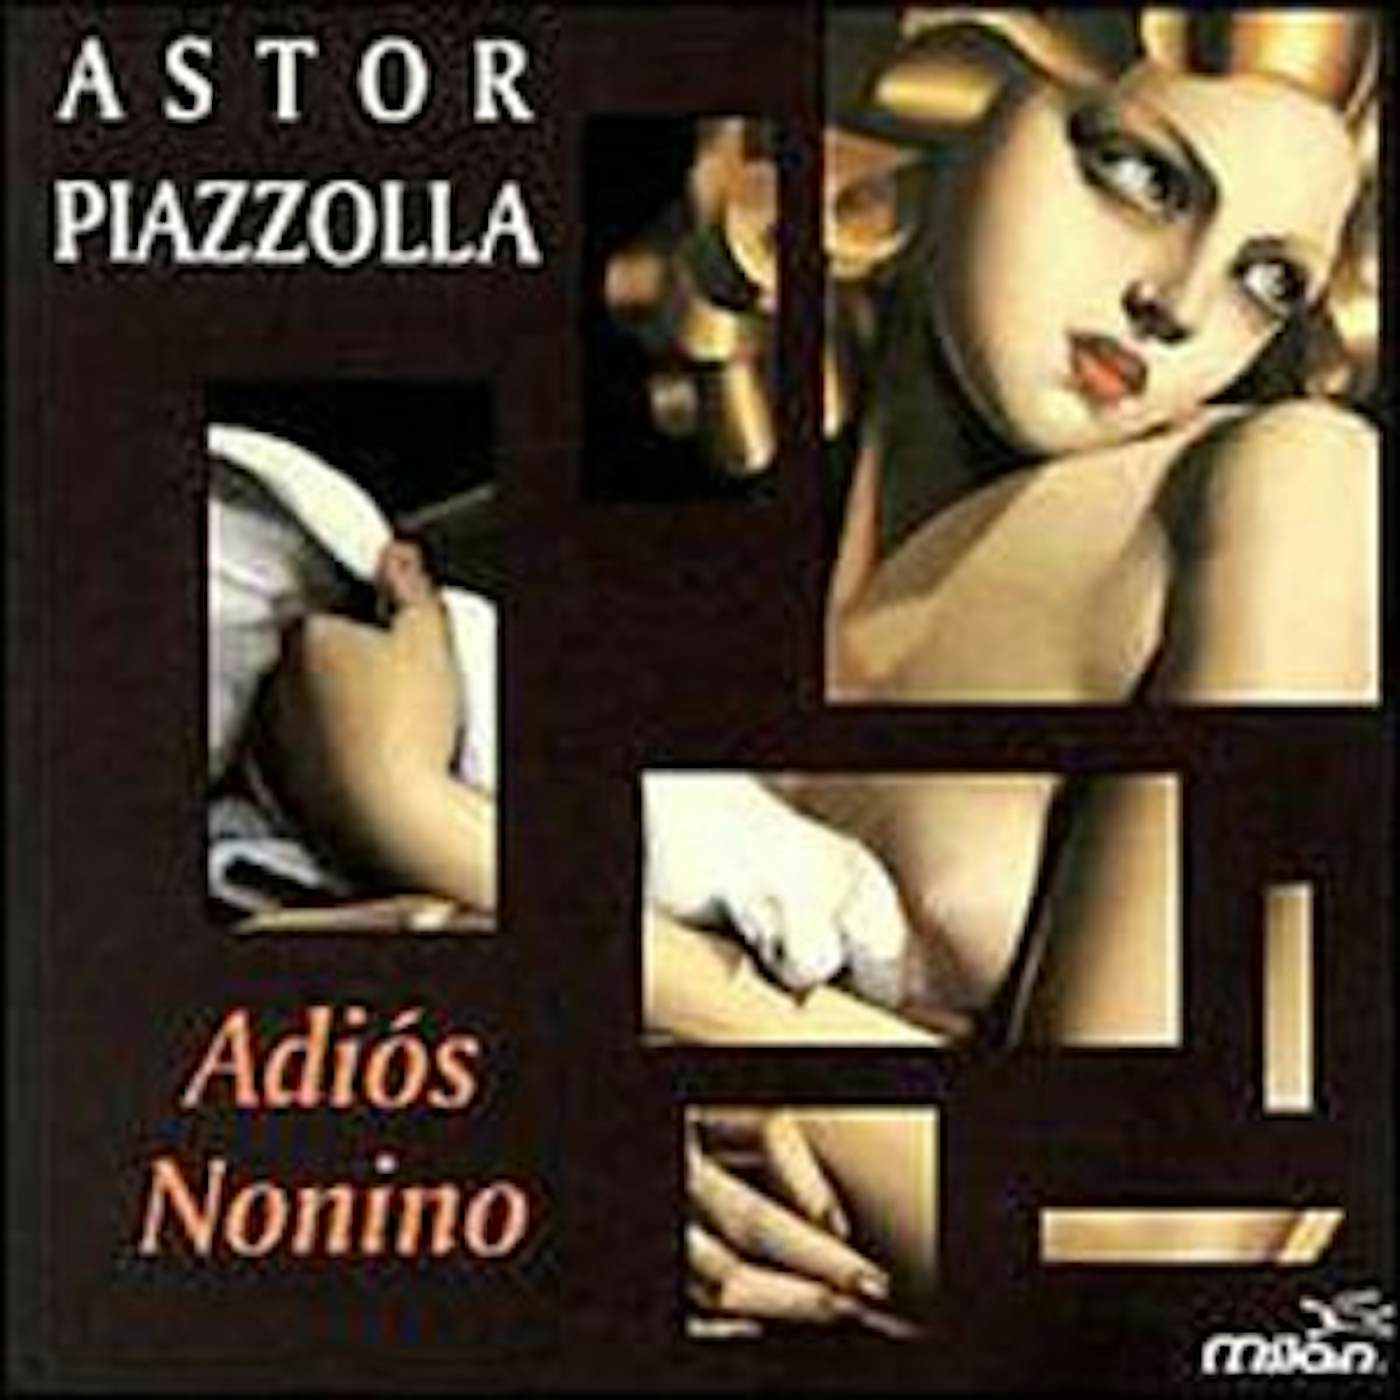 Astor Piazzolla ADIOS NONIMO / PRELUDE LA ORACION DEL TORERO CD